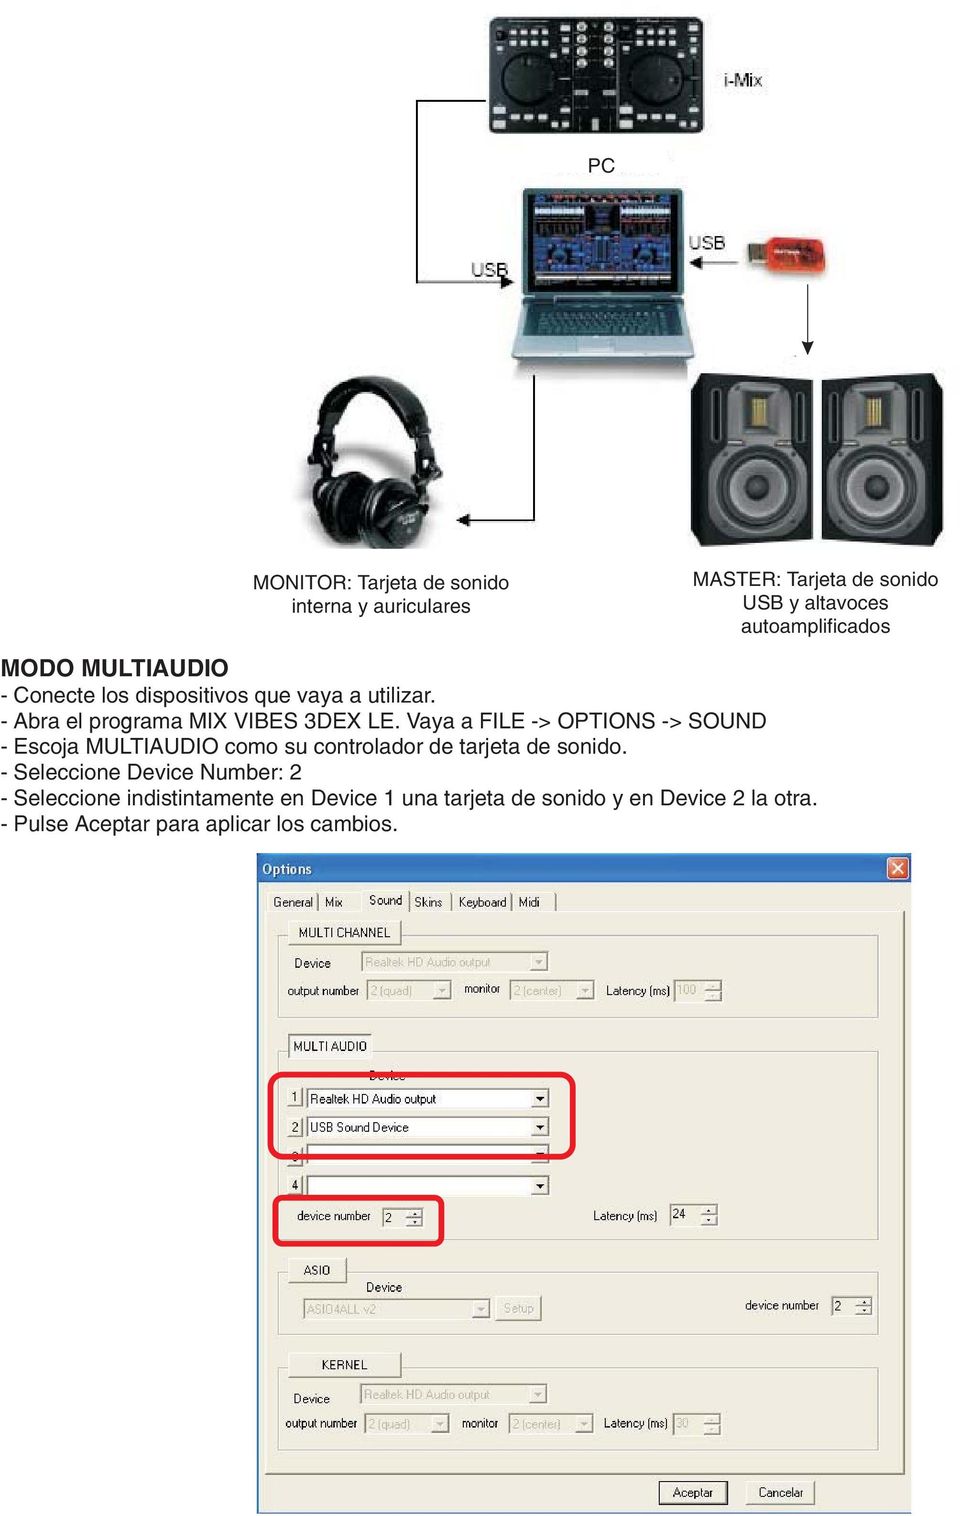 Vaya a FILE -> OPTIONS -> SOUND - Escoja MULTIAUDIO como su controlador de tarjeta de sonido.